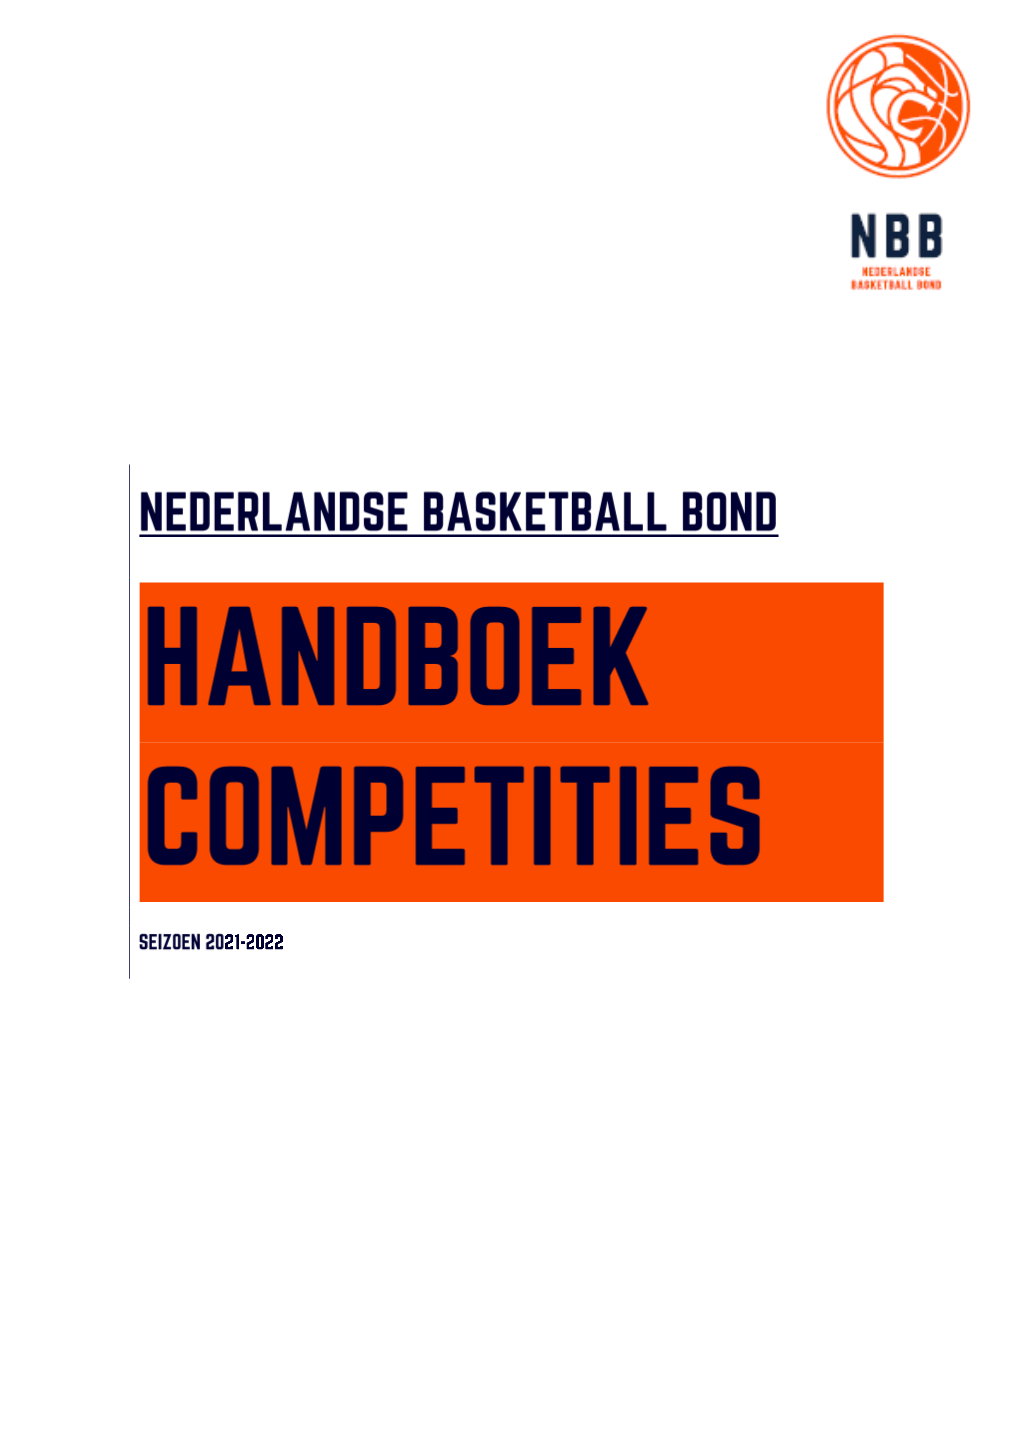 Handboek Competities | Seizoen 2021-2022 5.3